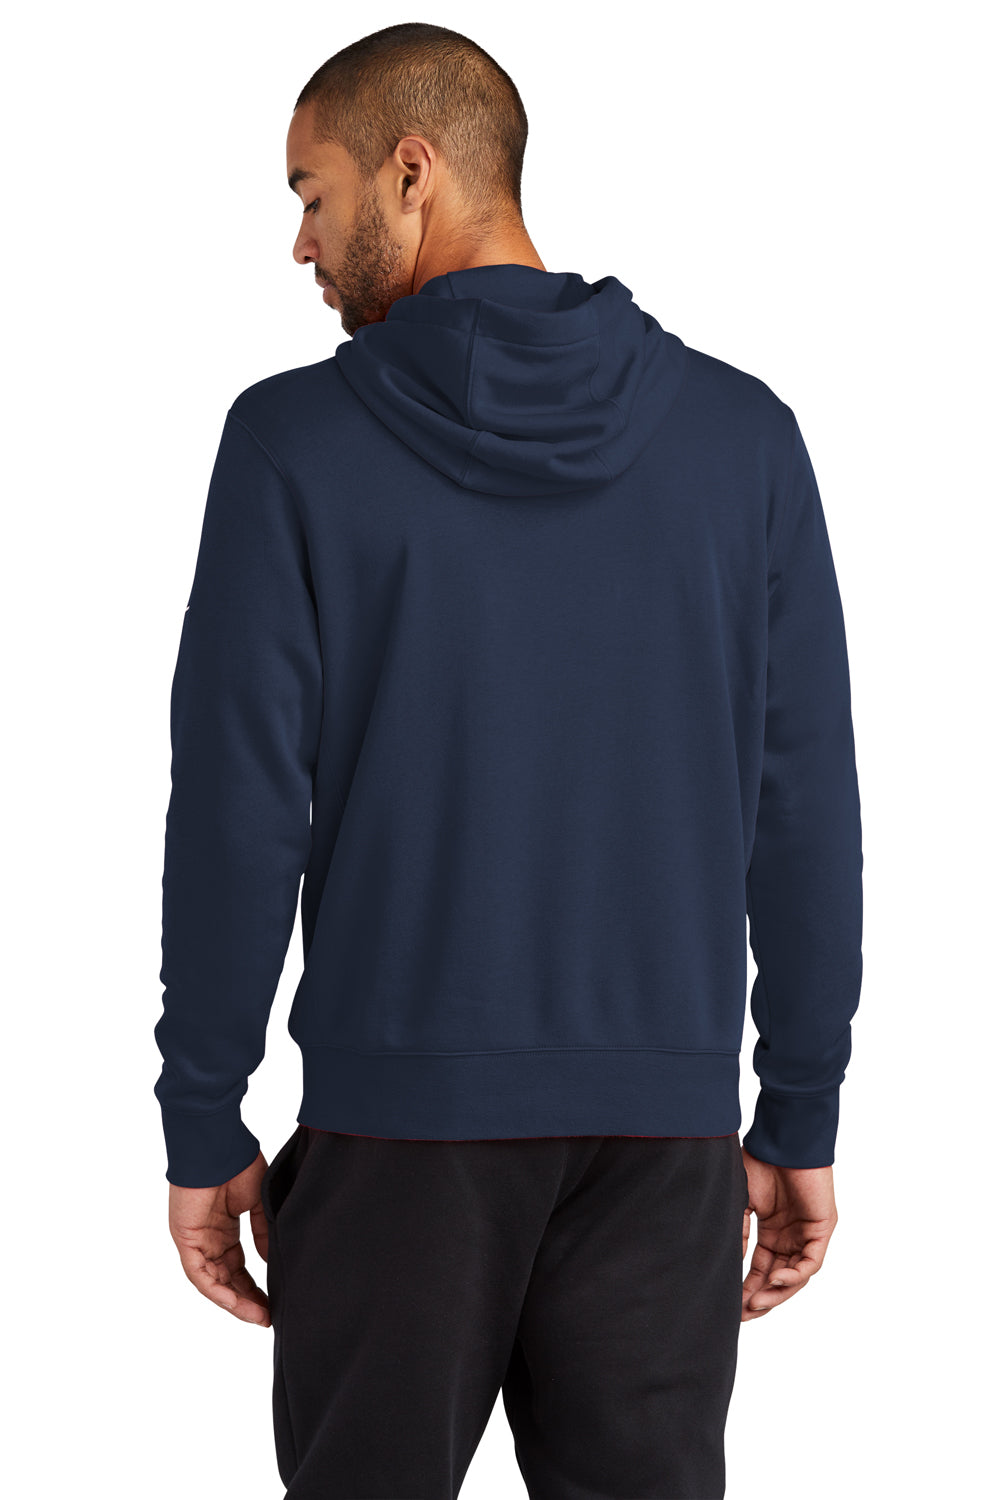 Nike NKDR1513 Mens Club Fleece Full Zip Hooded Sweatshirt Hoodie Midnight Navy Blue Model Back